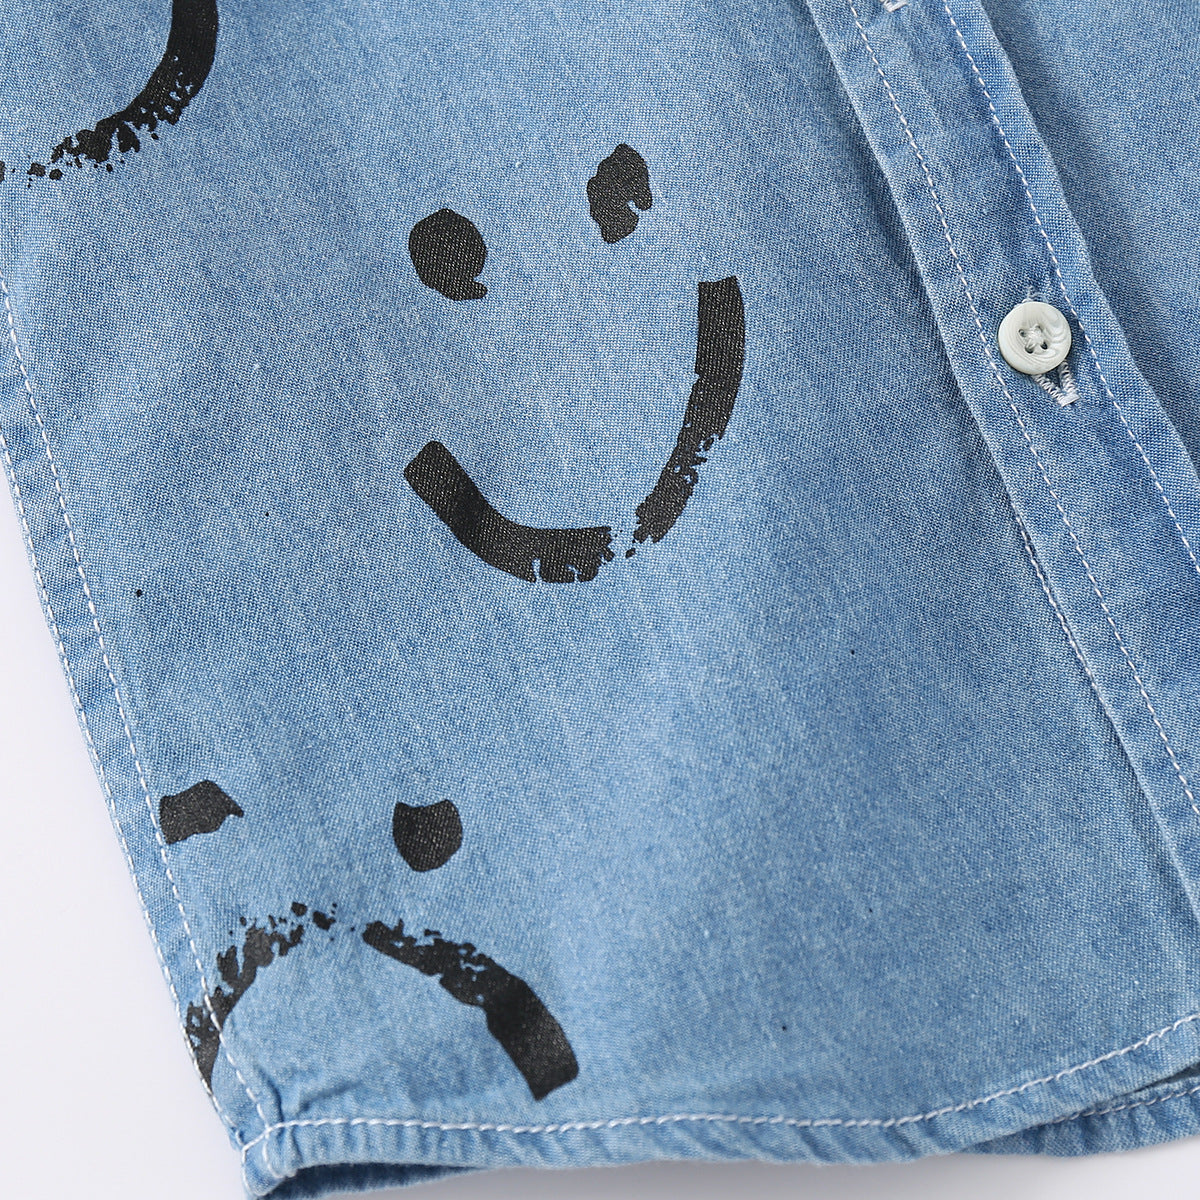 [513507] - Baju Atasan Import Kemeja Anak - Motif Sneaky Smile